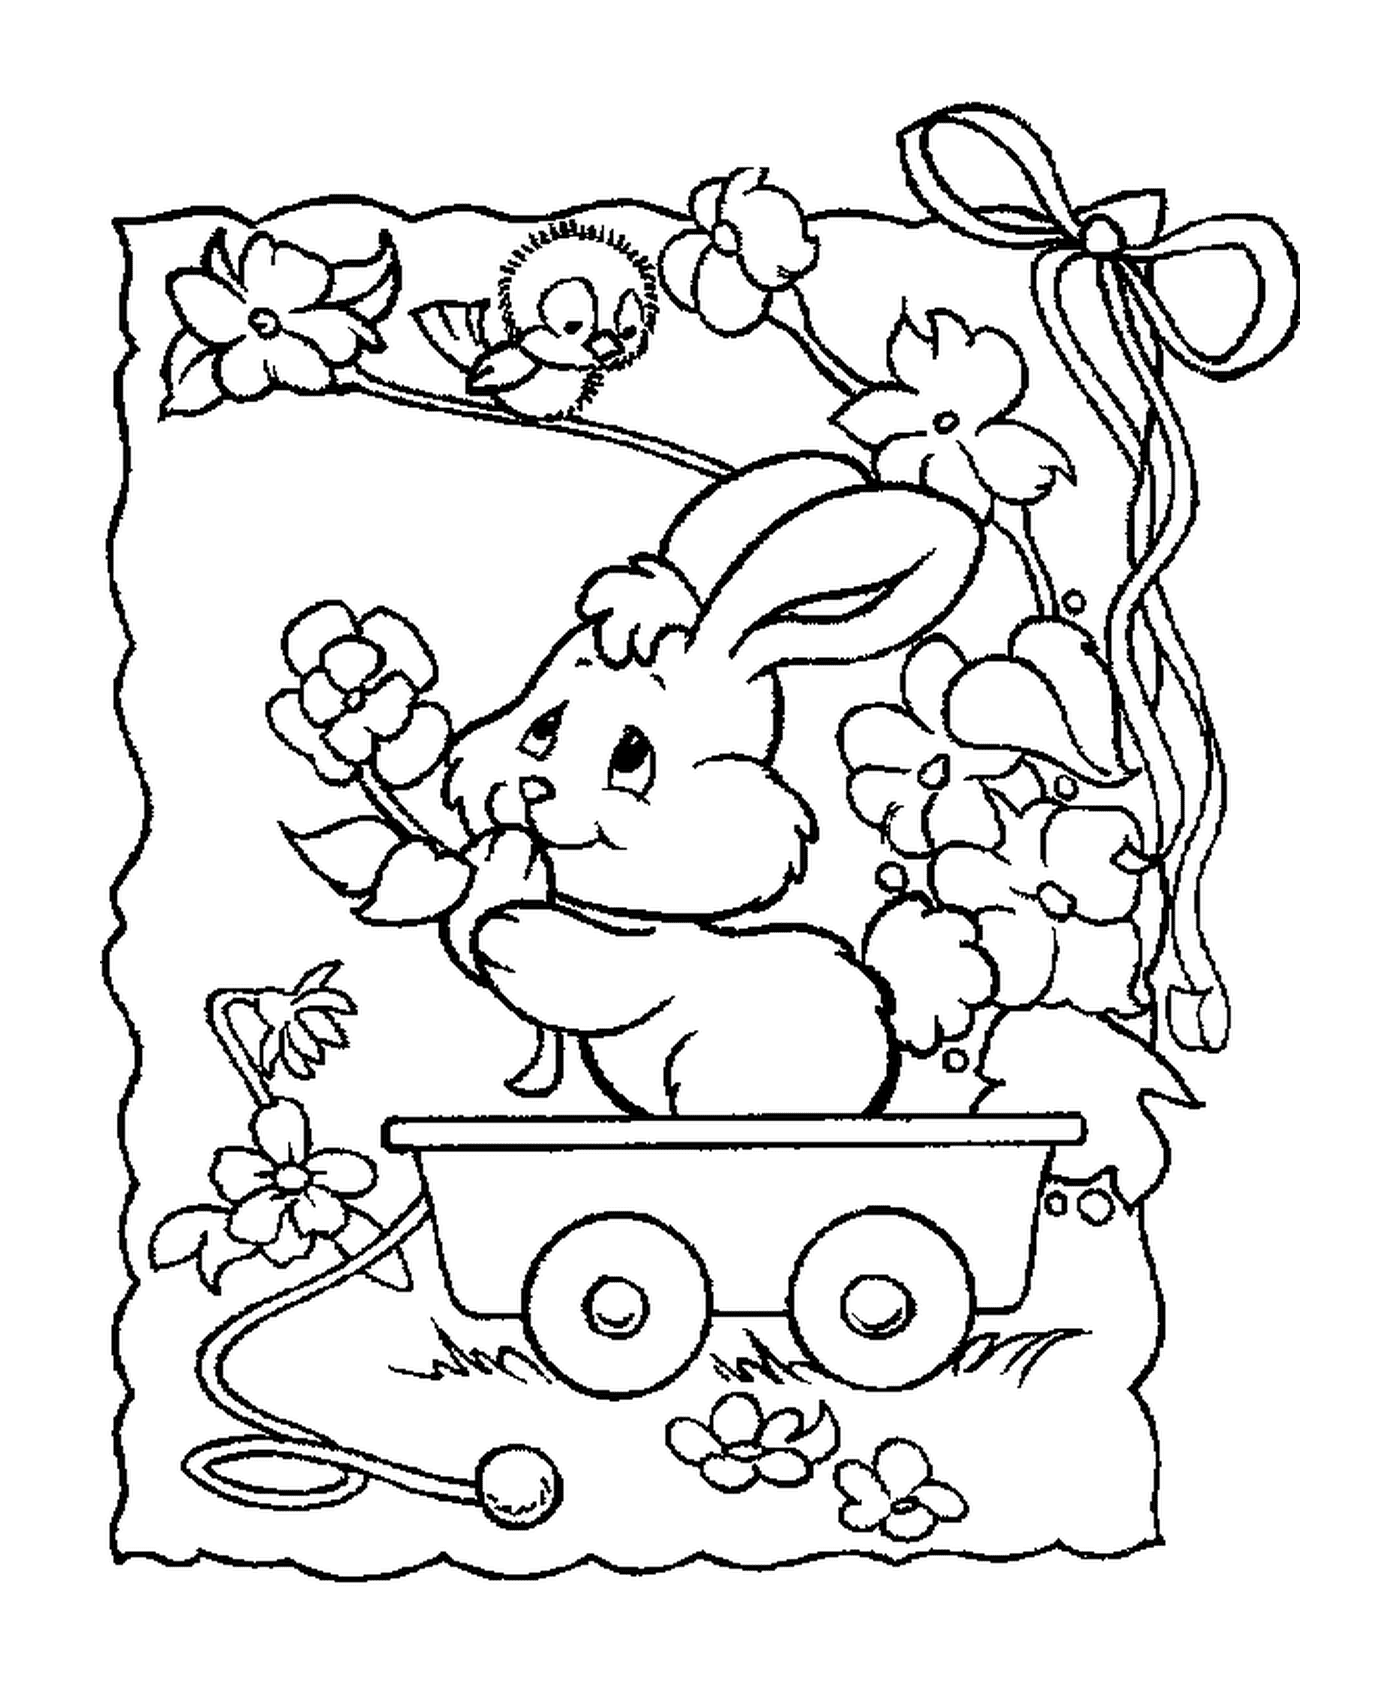  एक खरगोश गाड़ी में बैठे 